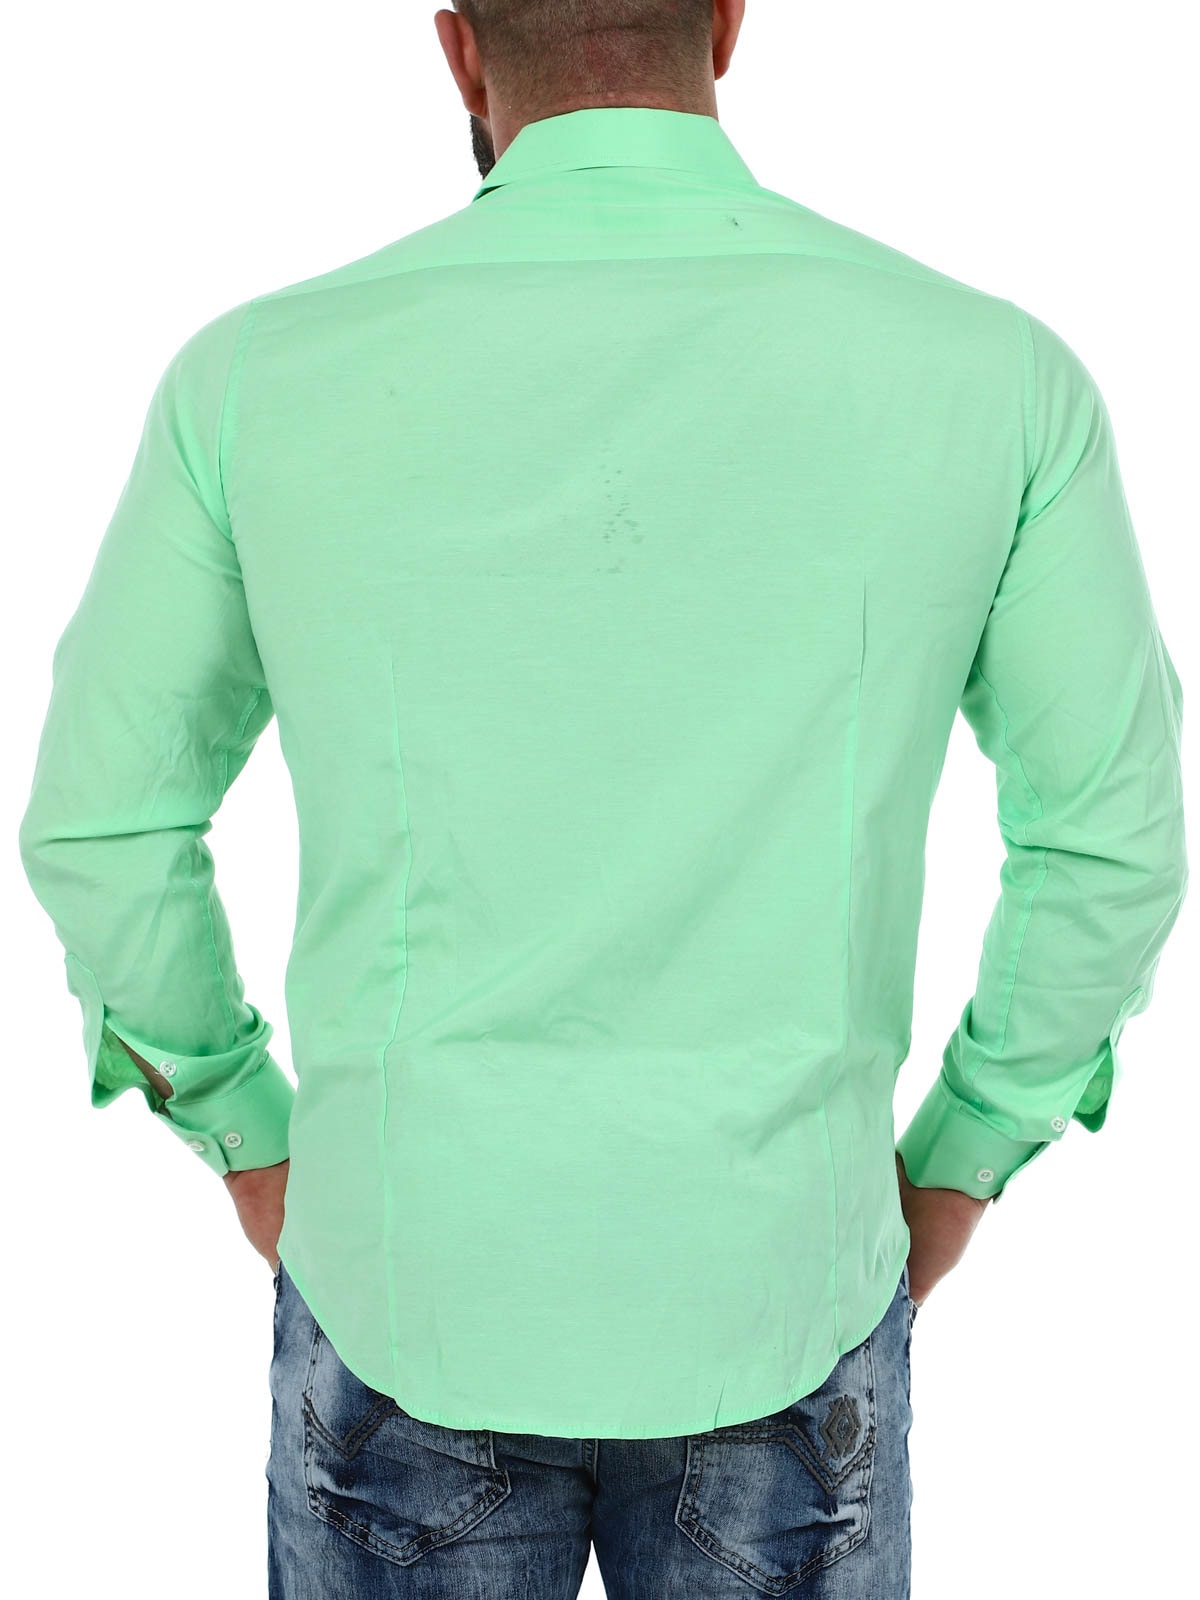 Cassian Skjorte - Light green_6.JPG